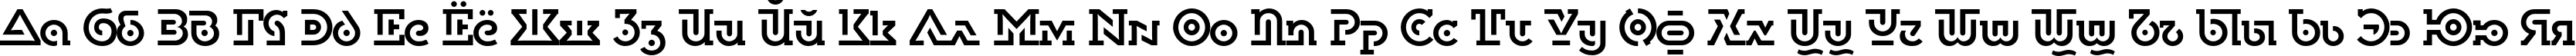 Пример написания русского алфавита шрифтом DublonBrus